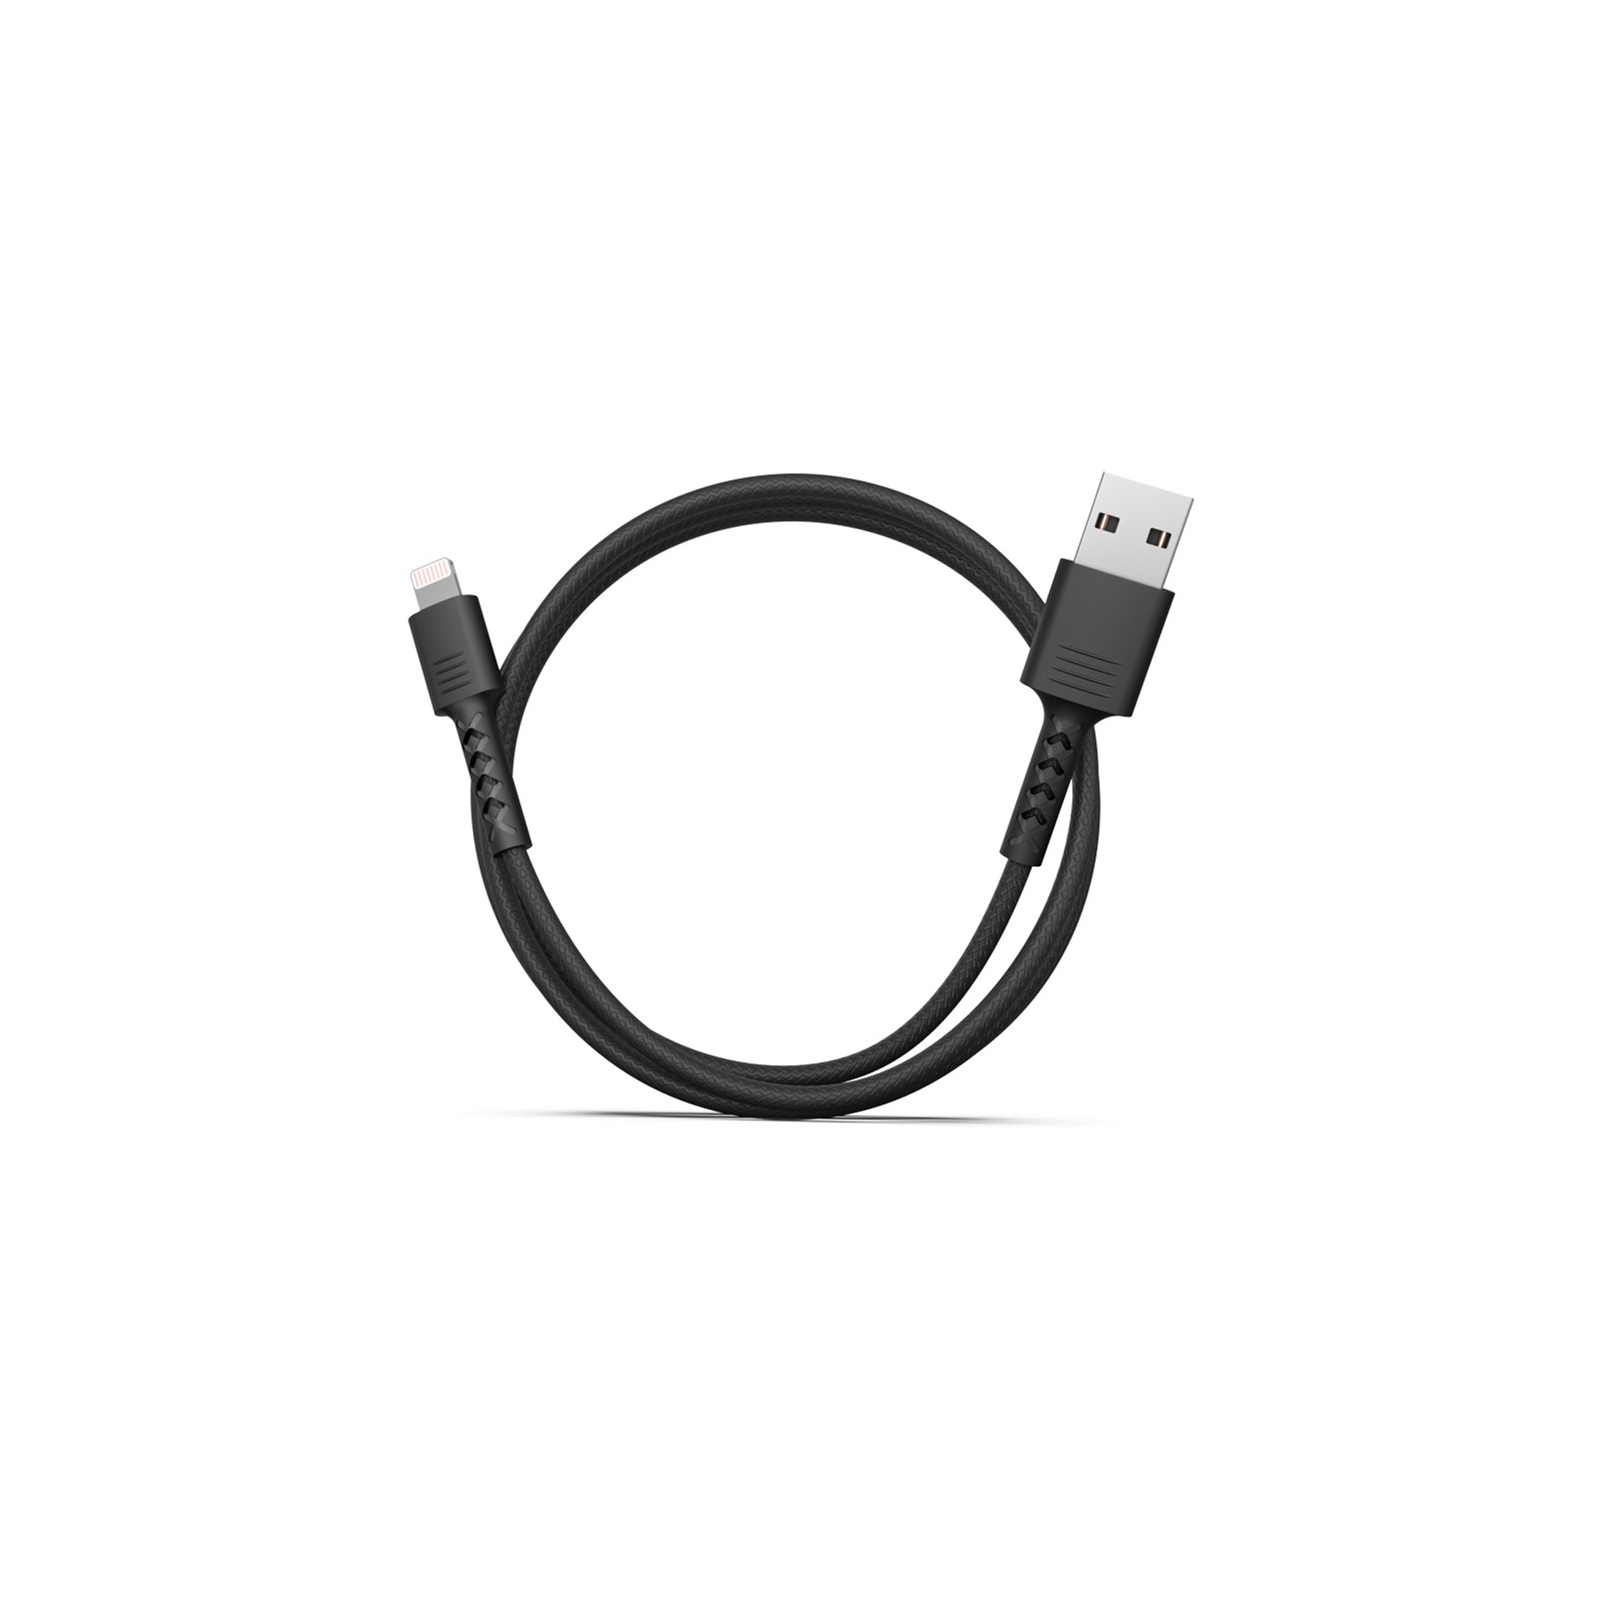 Дата кабель USB 2.0 AM to Lightning 1.0m Soft black Pixus (4897058530933) зображення 2